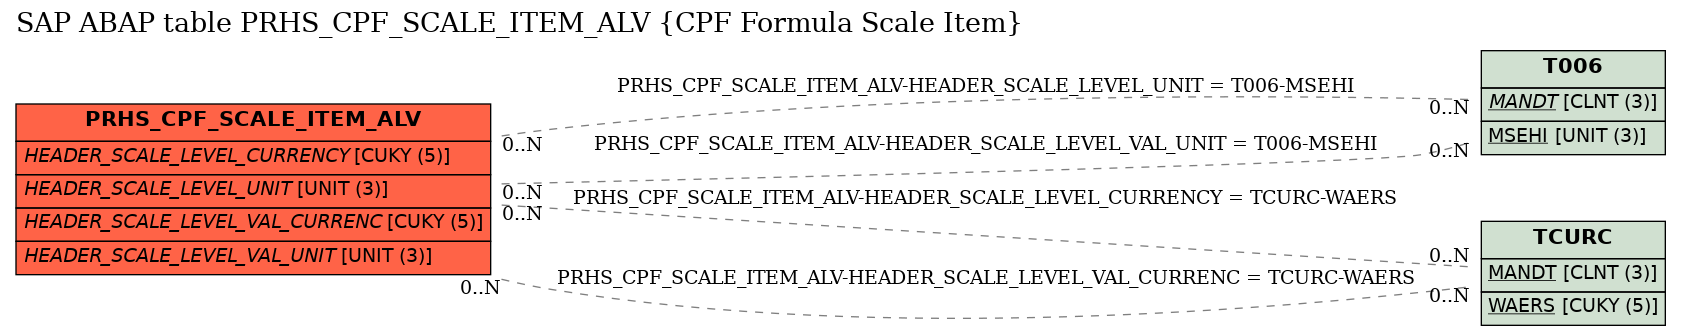 E-R Diagram for table PRHS_CPF_SCALE_ITEM_ALV (CPF Formula Scale Item)